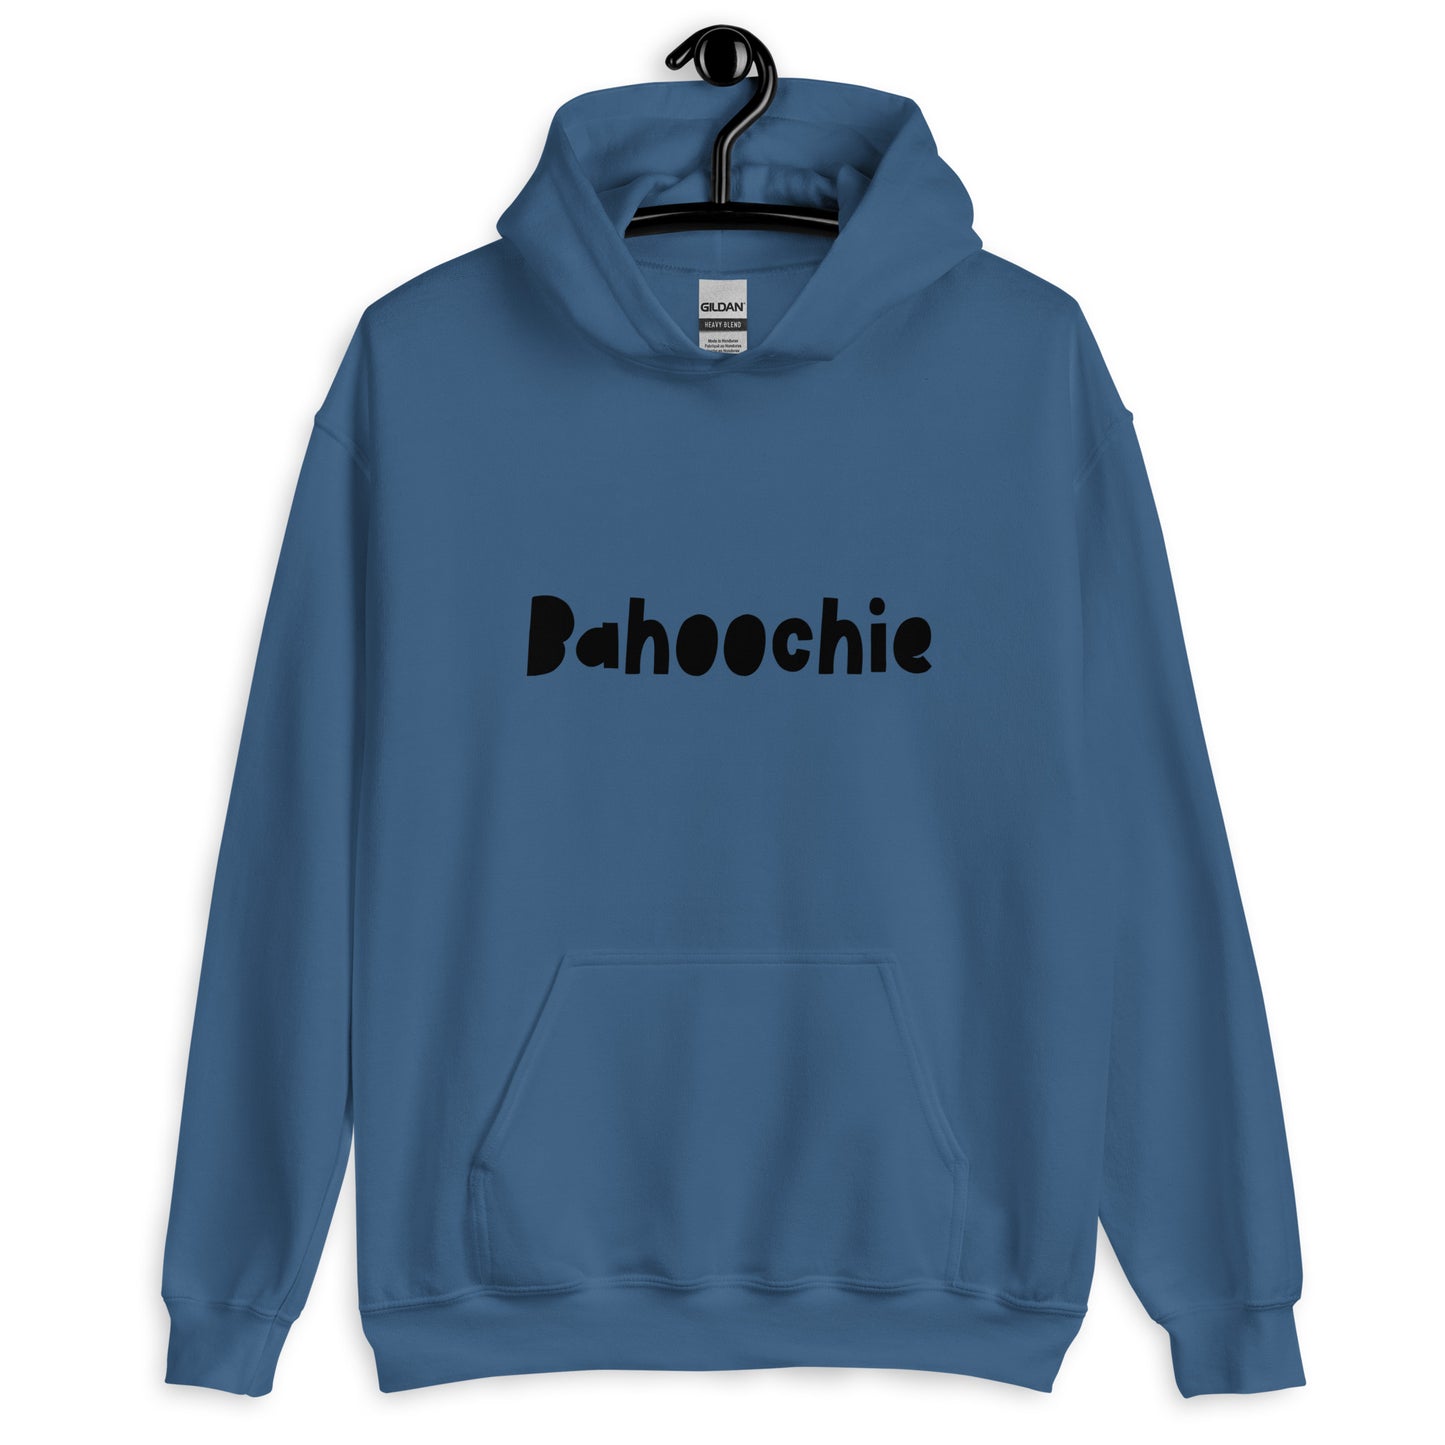 'Bahoochie' Scots Slang Unisex Hoodie